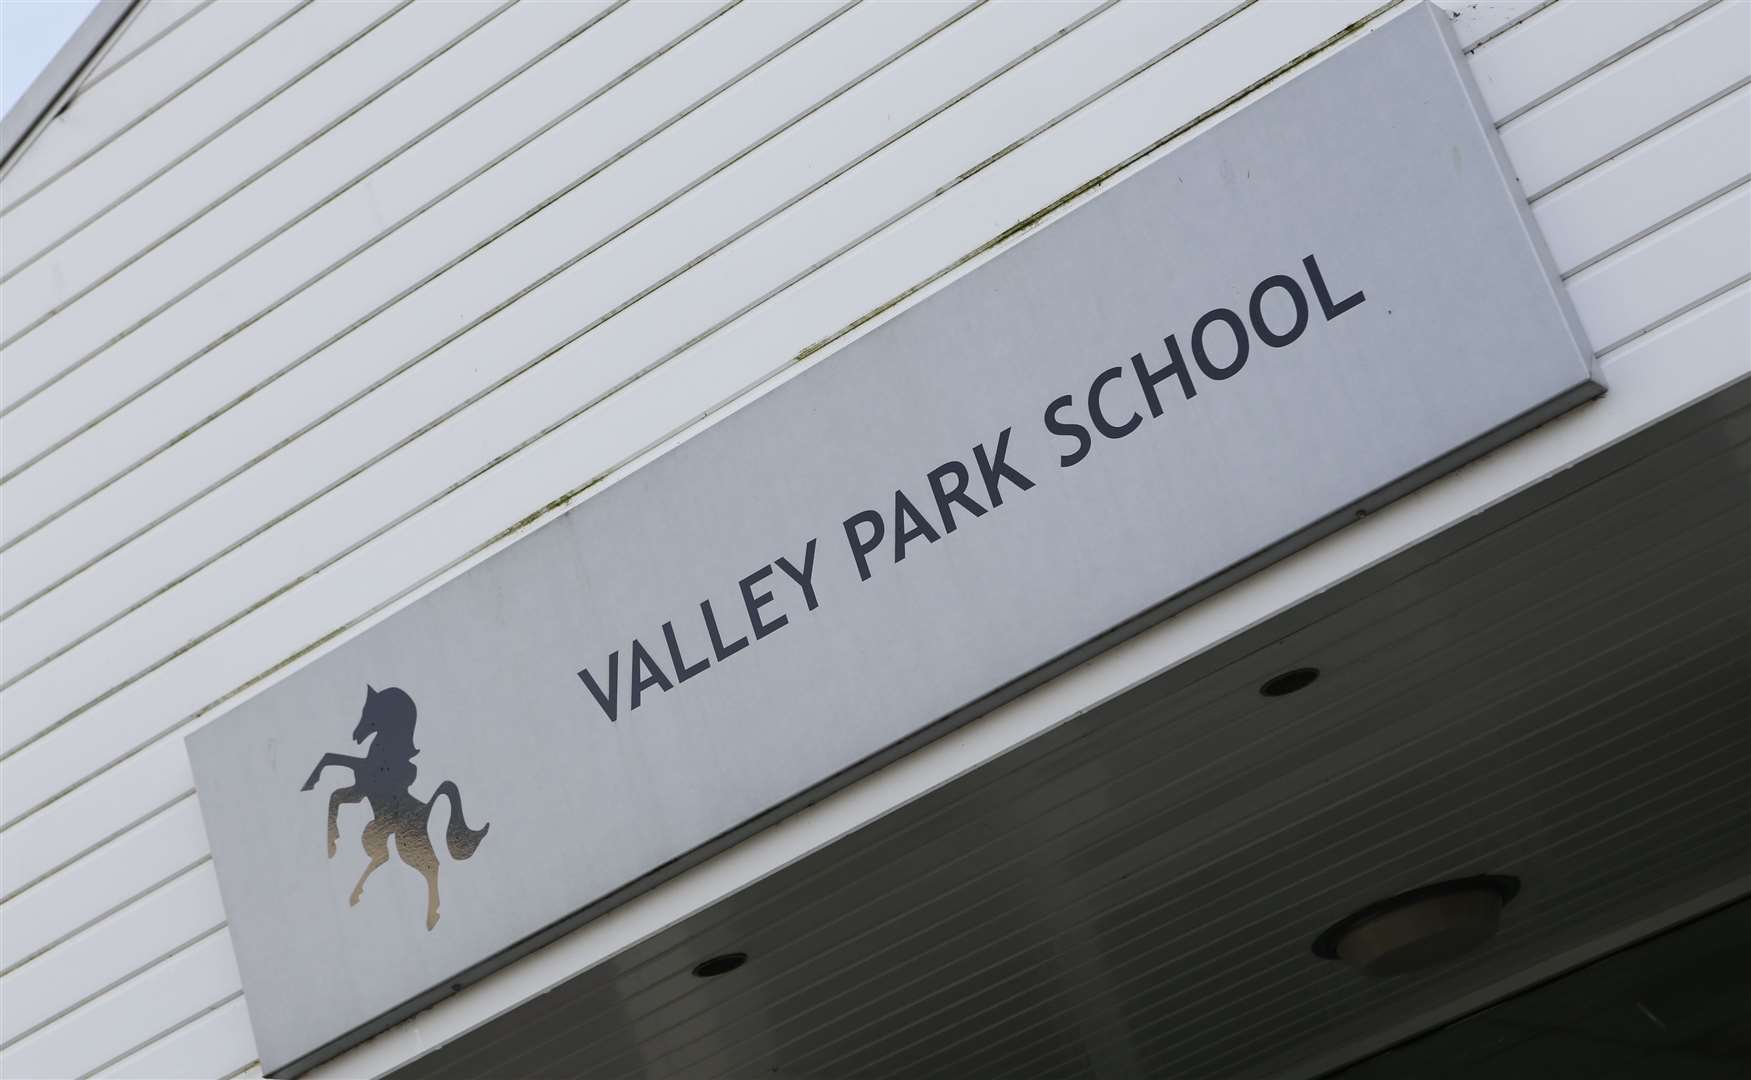 Valley Park School. Picture: Matthew Walker